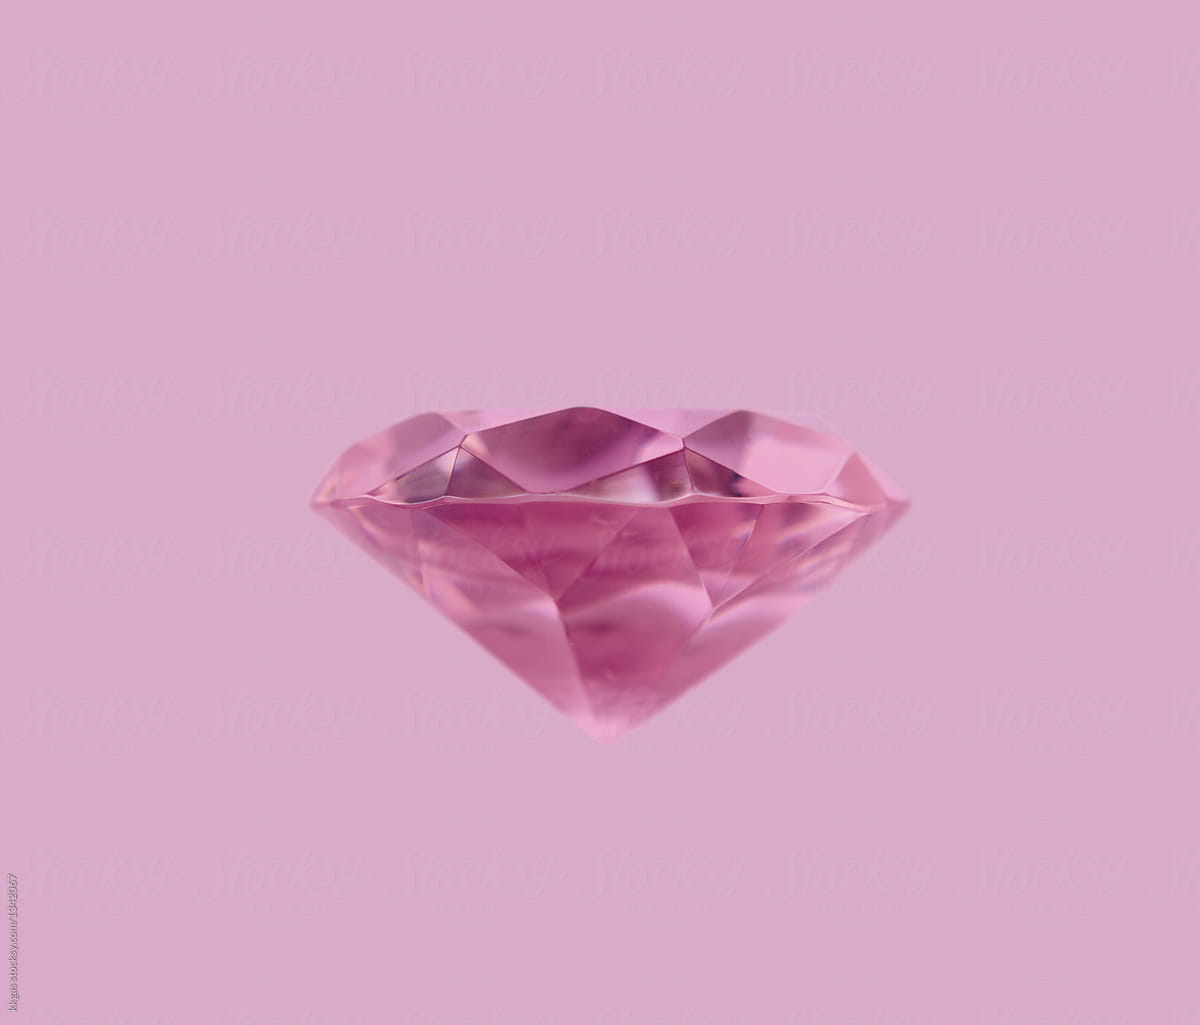 Hình nền hồng kim cương trên nền hồng là sự lựa chọn hoàn hảo để tô điểm cho thiết kế của bạn. Với những hạt kim cương lấp lánh như ngàn sao làm nền cho những chữ cái hay các hình vẽ, chắc chắn sẽ khiến mọi người phải ngắm nhìn lâu hơn.